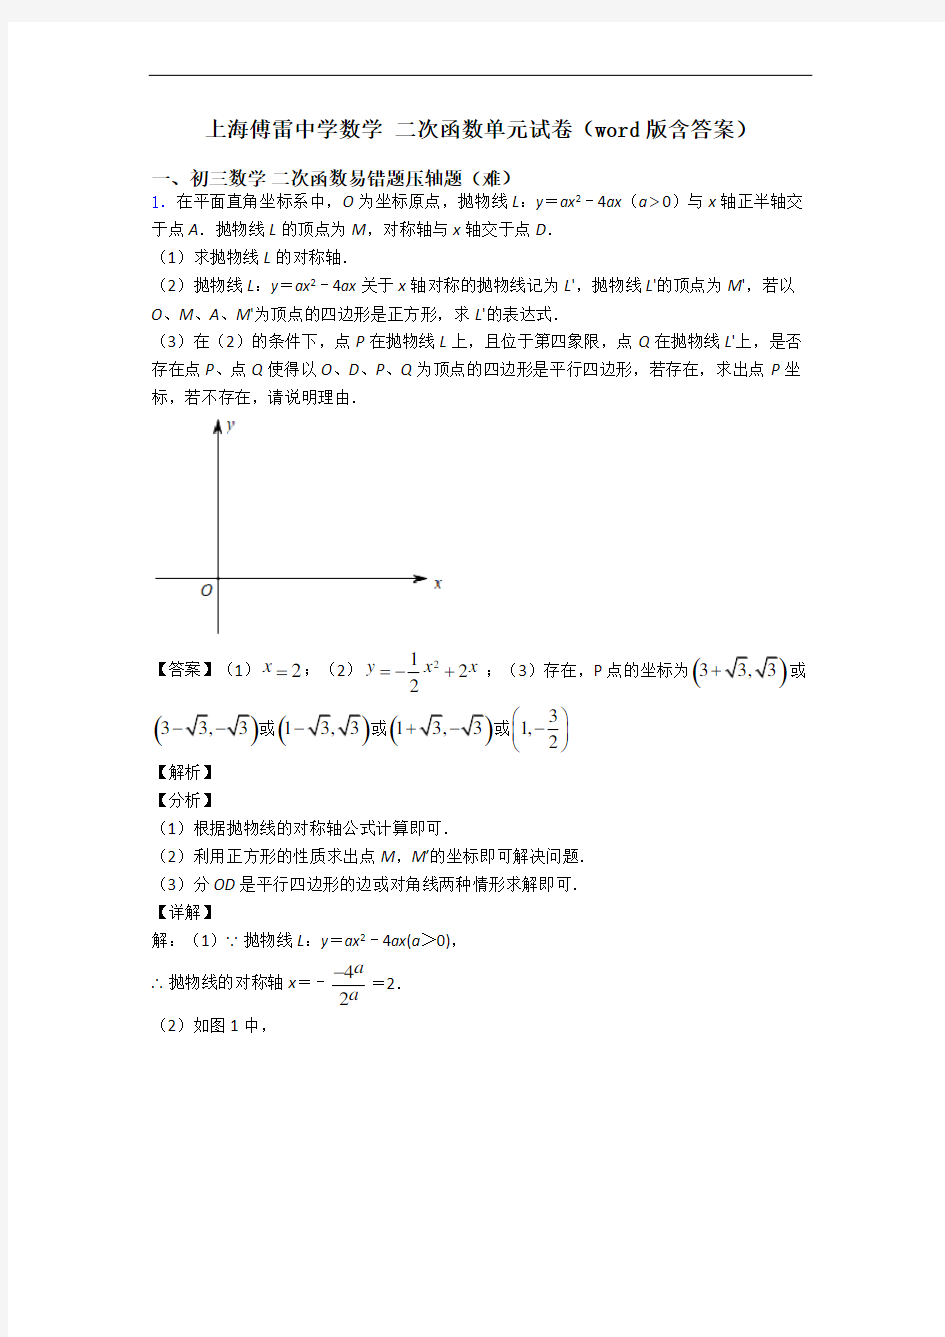 上海傅雷中学数学 二次函数单元试卷(word版含答案)